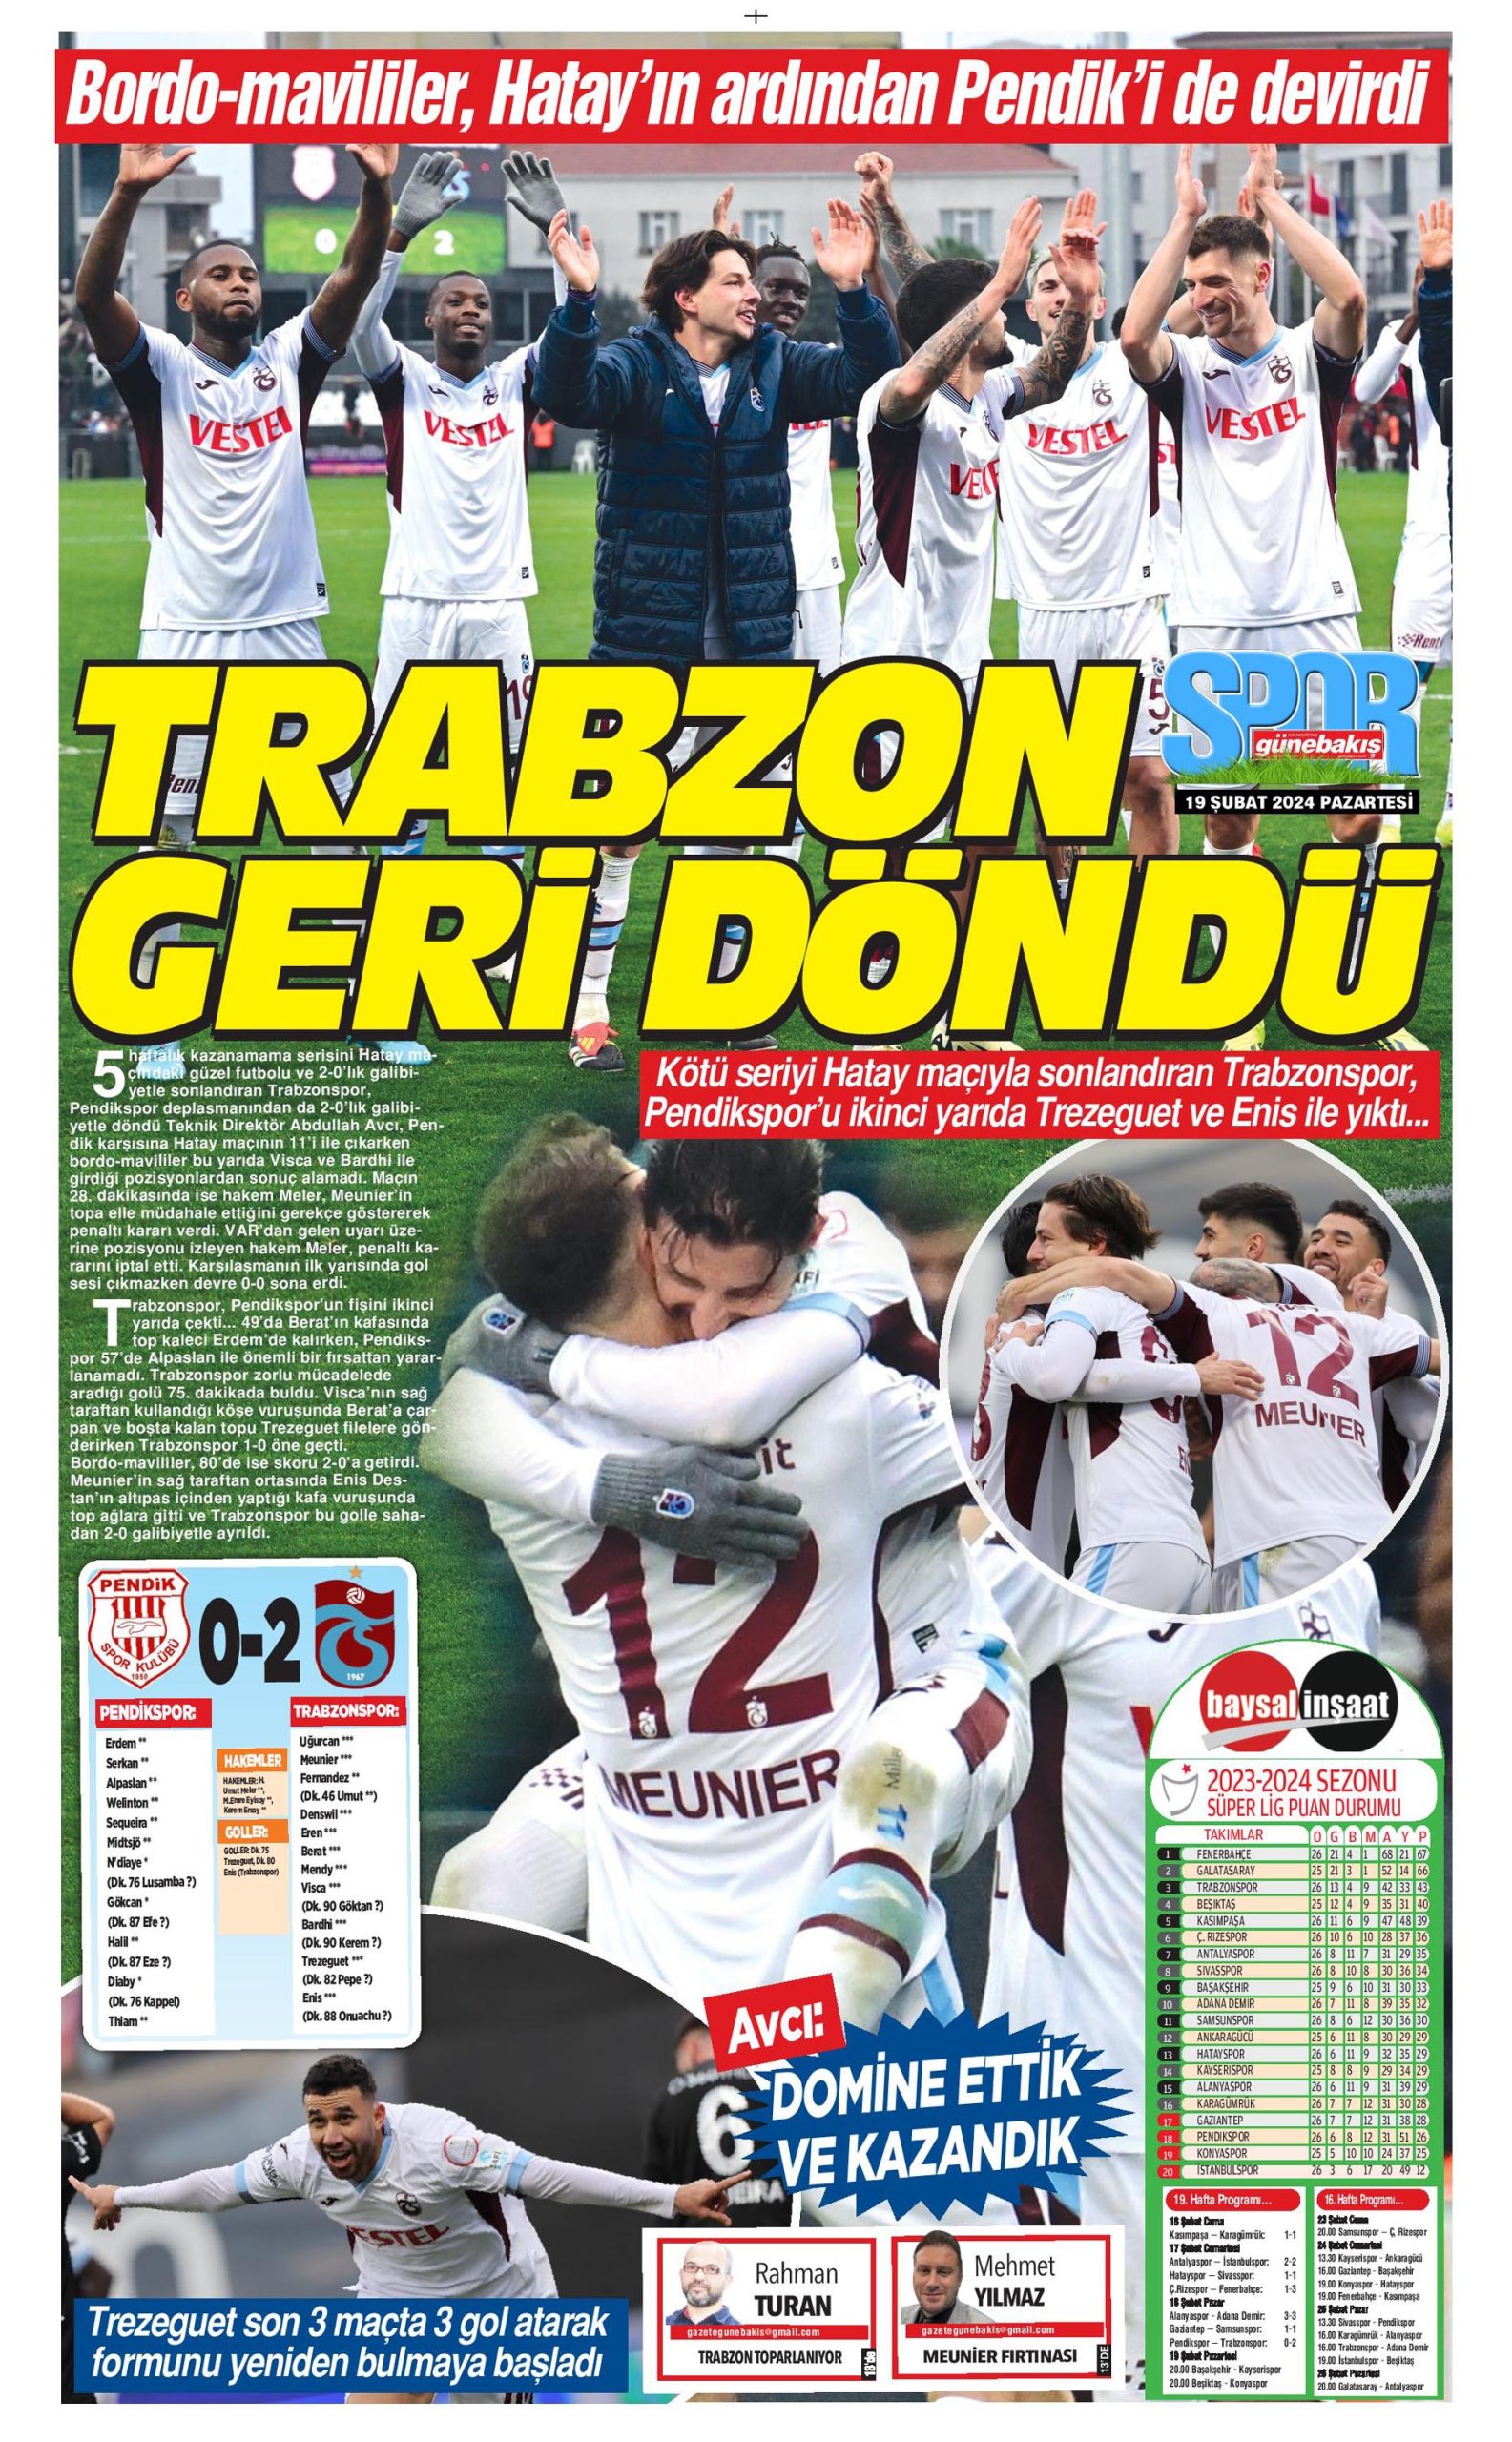 Trabzonspor'a bahar erken geldi!